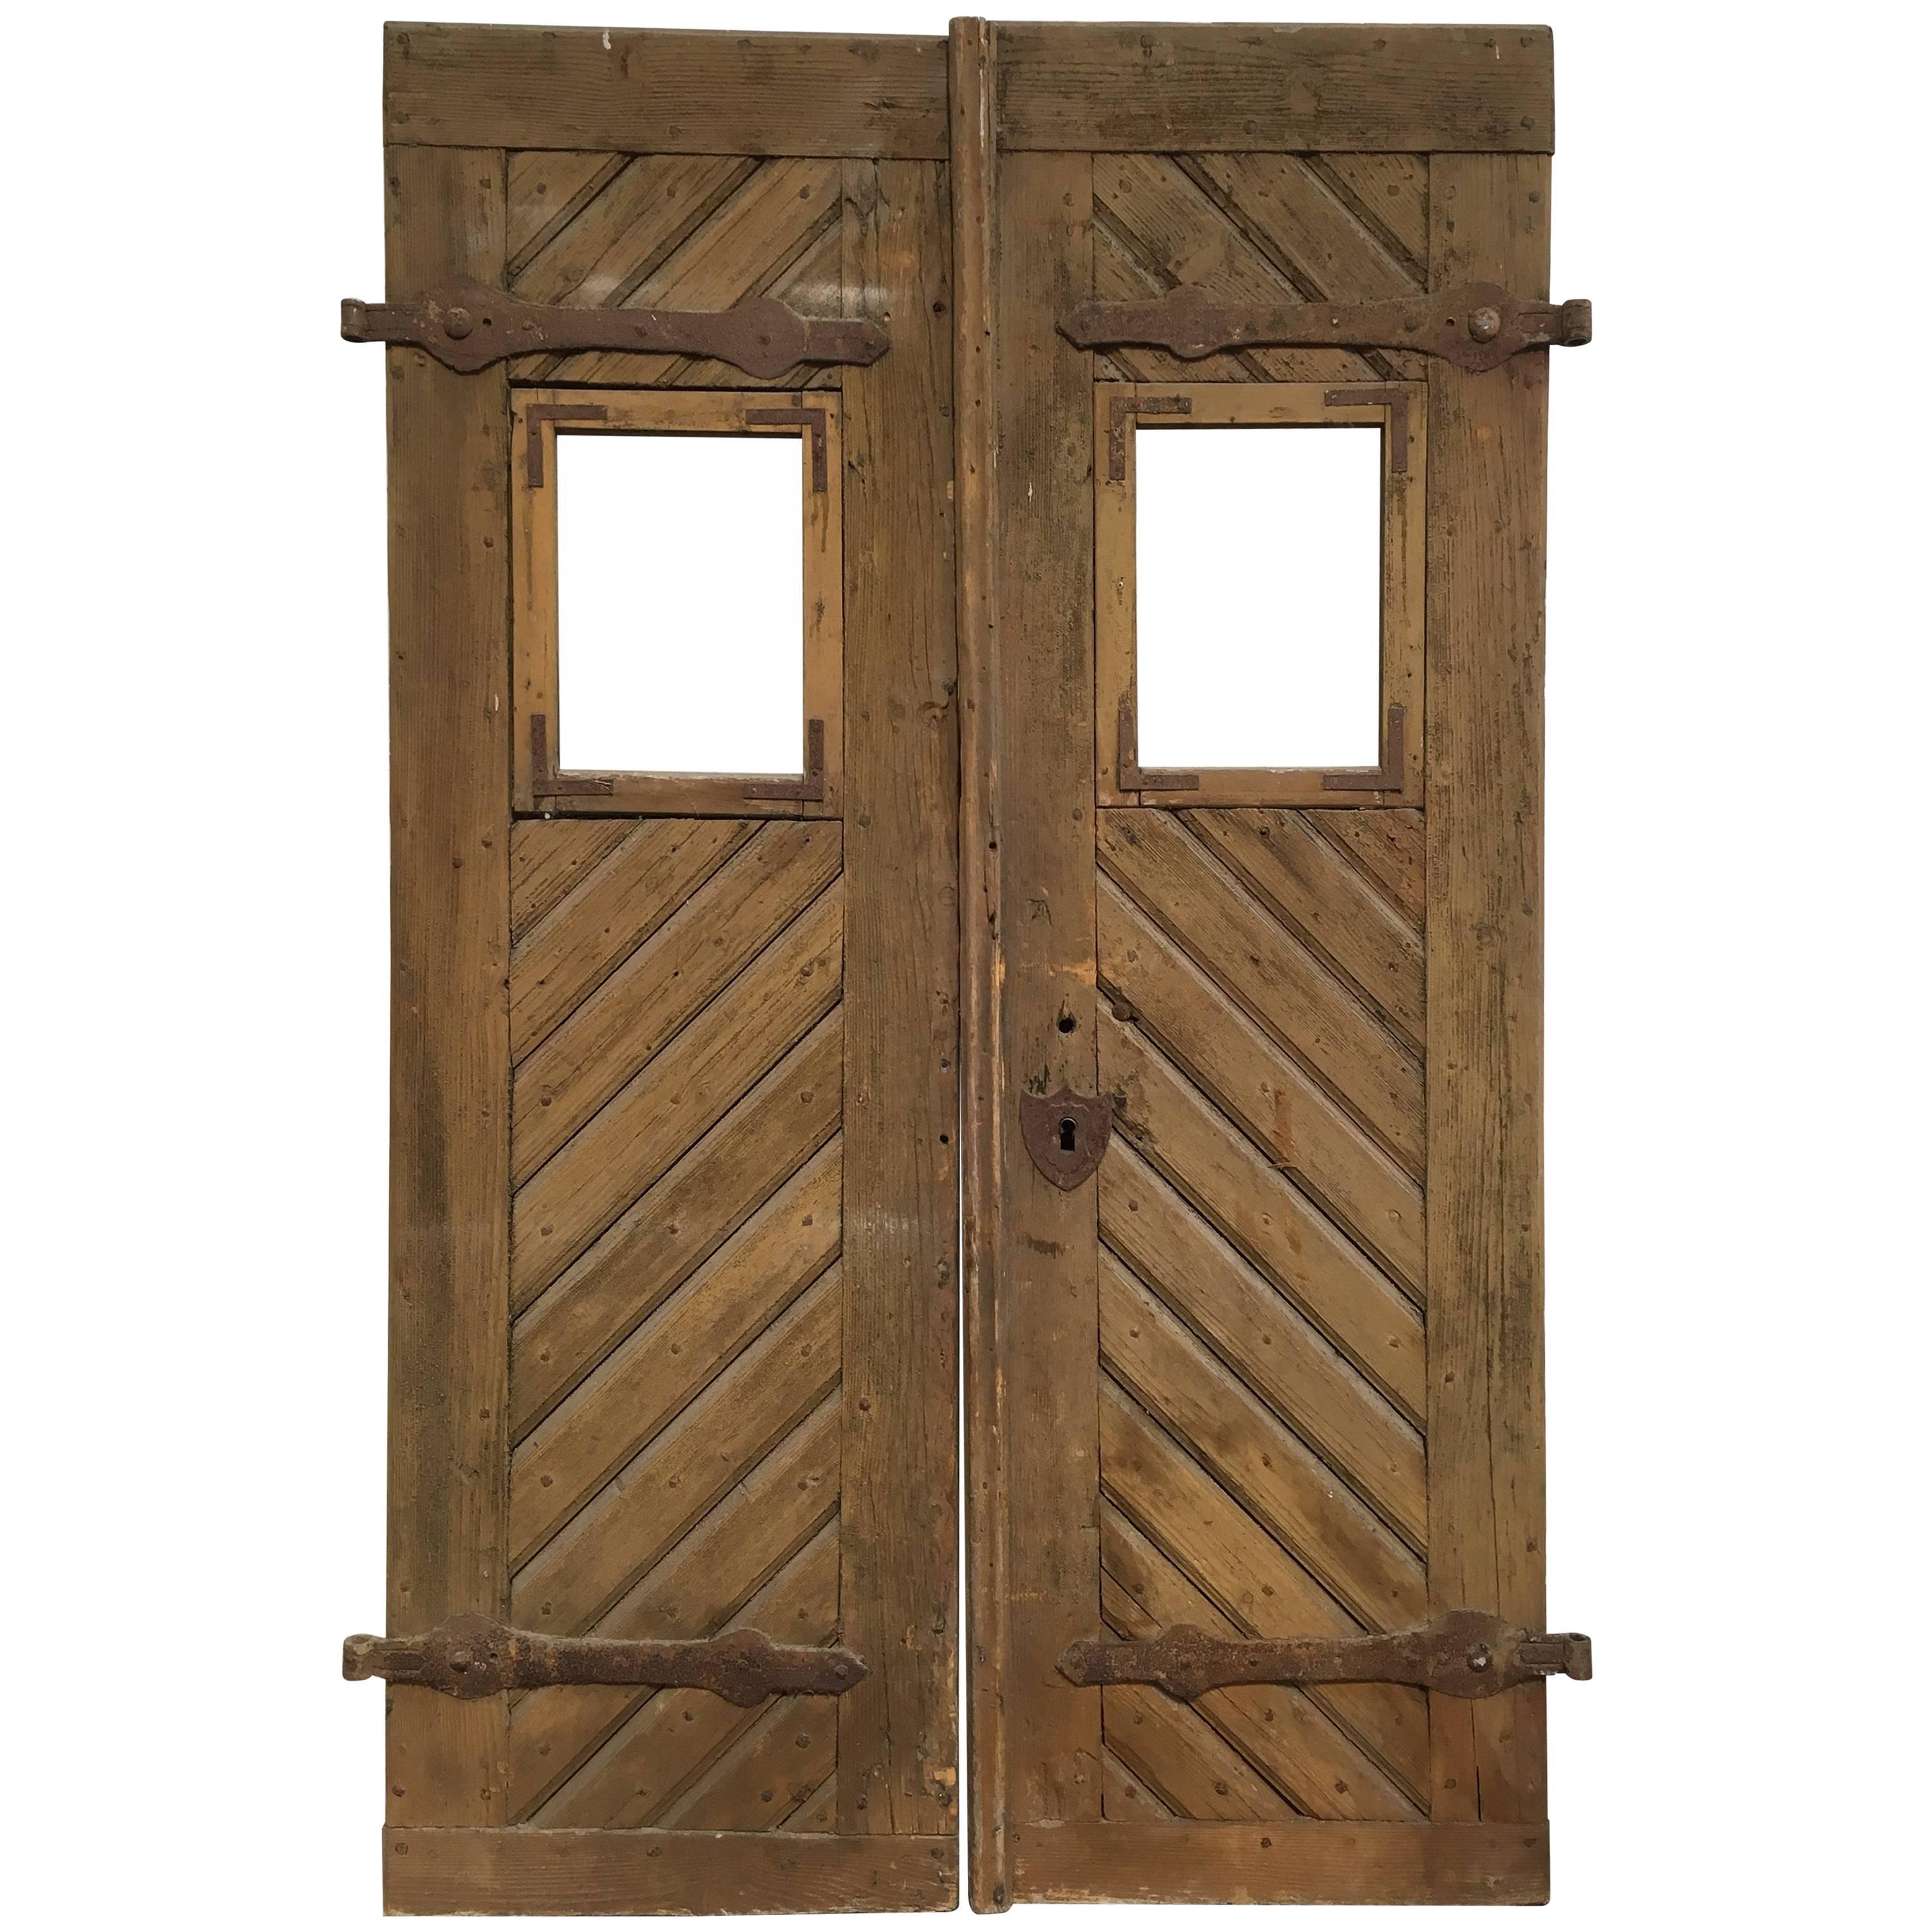 Pair of Antique European Farm Doors